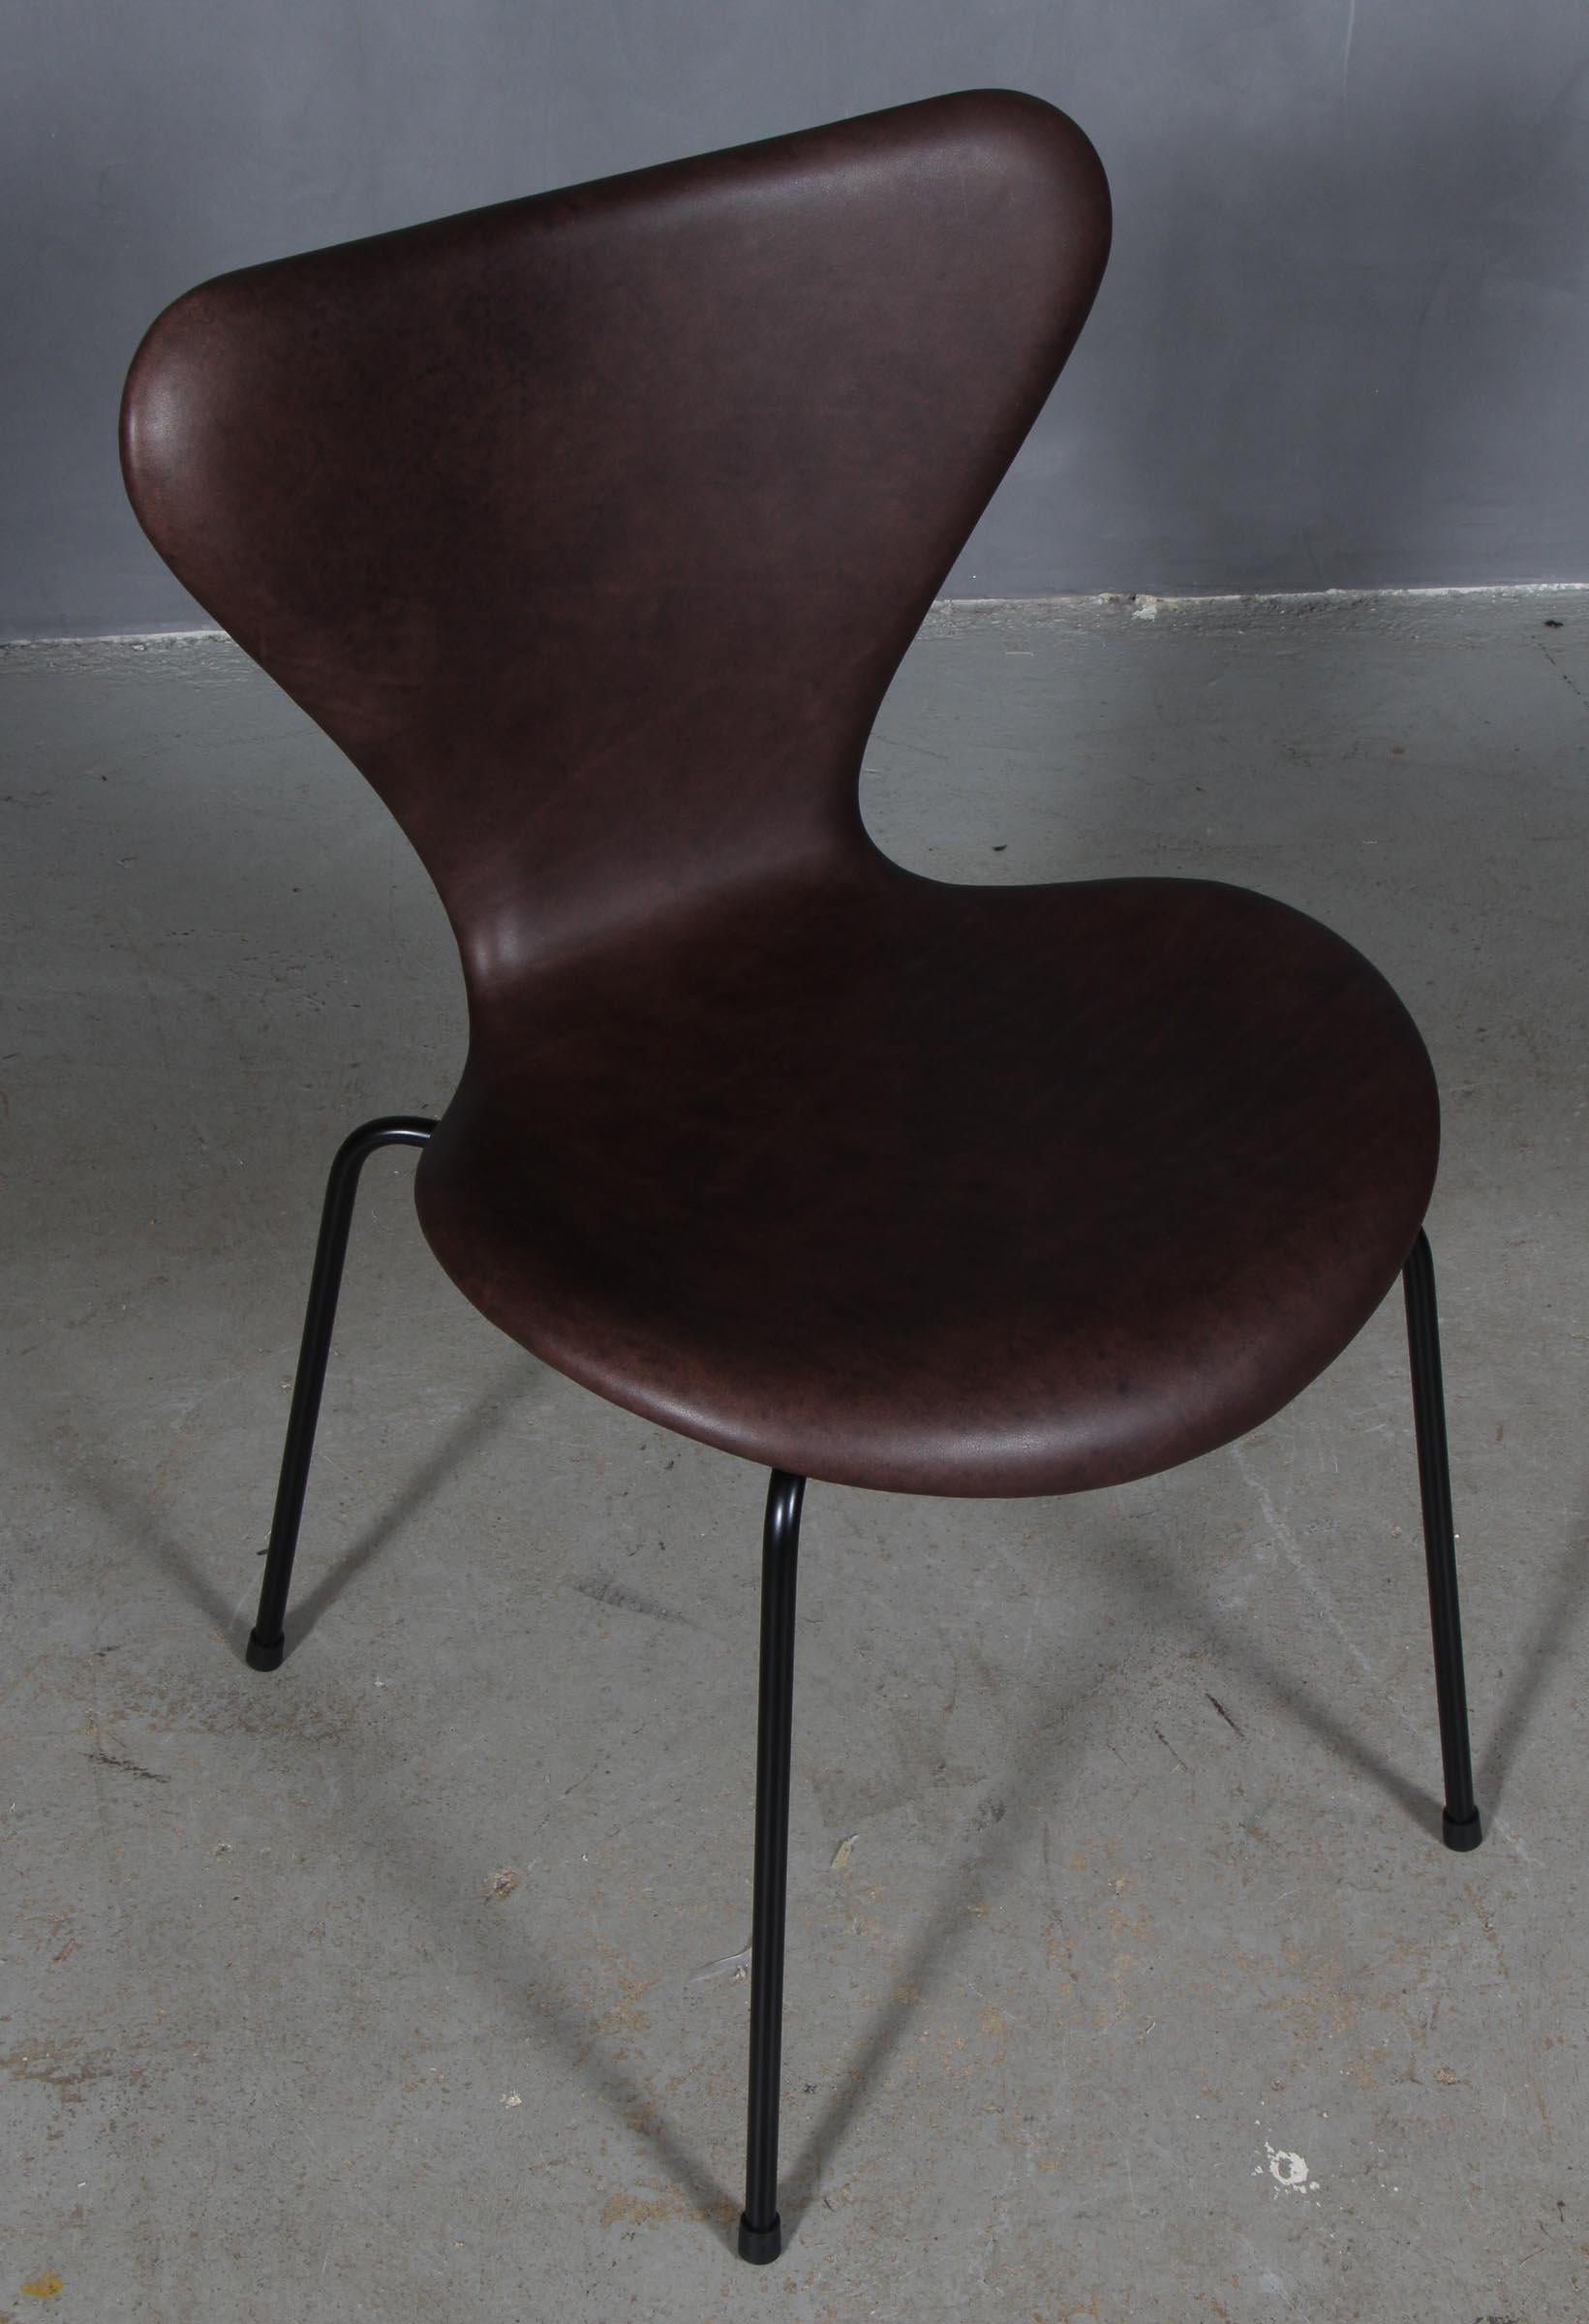 Chaise de salle à manger Arne Jacobsen nouvellement tapissée de cuir aniline Mokka.

Base en tube d'acier revêtu de poudre.

Modèle 3107 Syveren, fabriqué par Fritz Hansen.